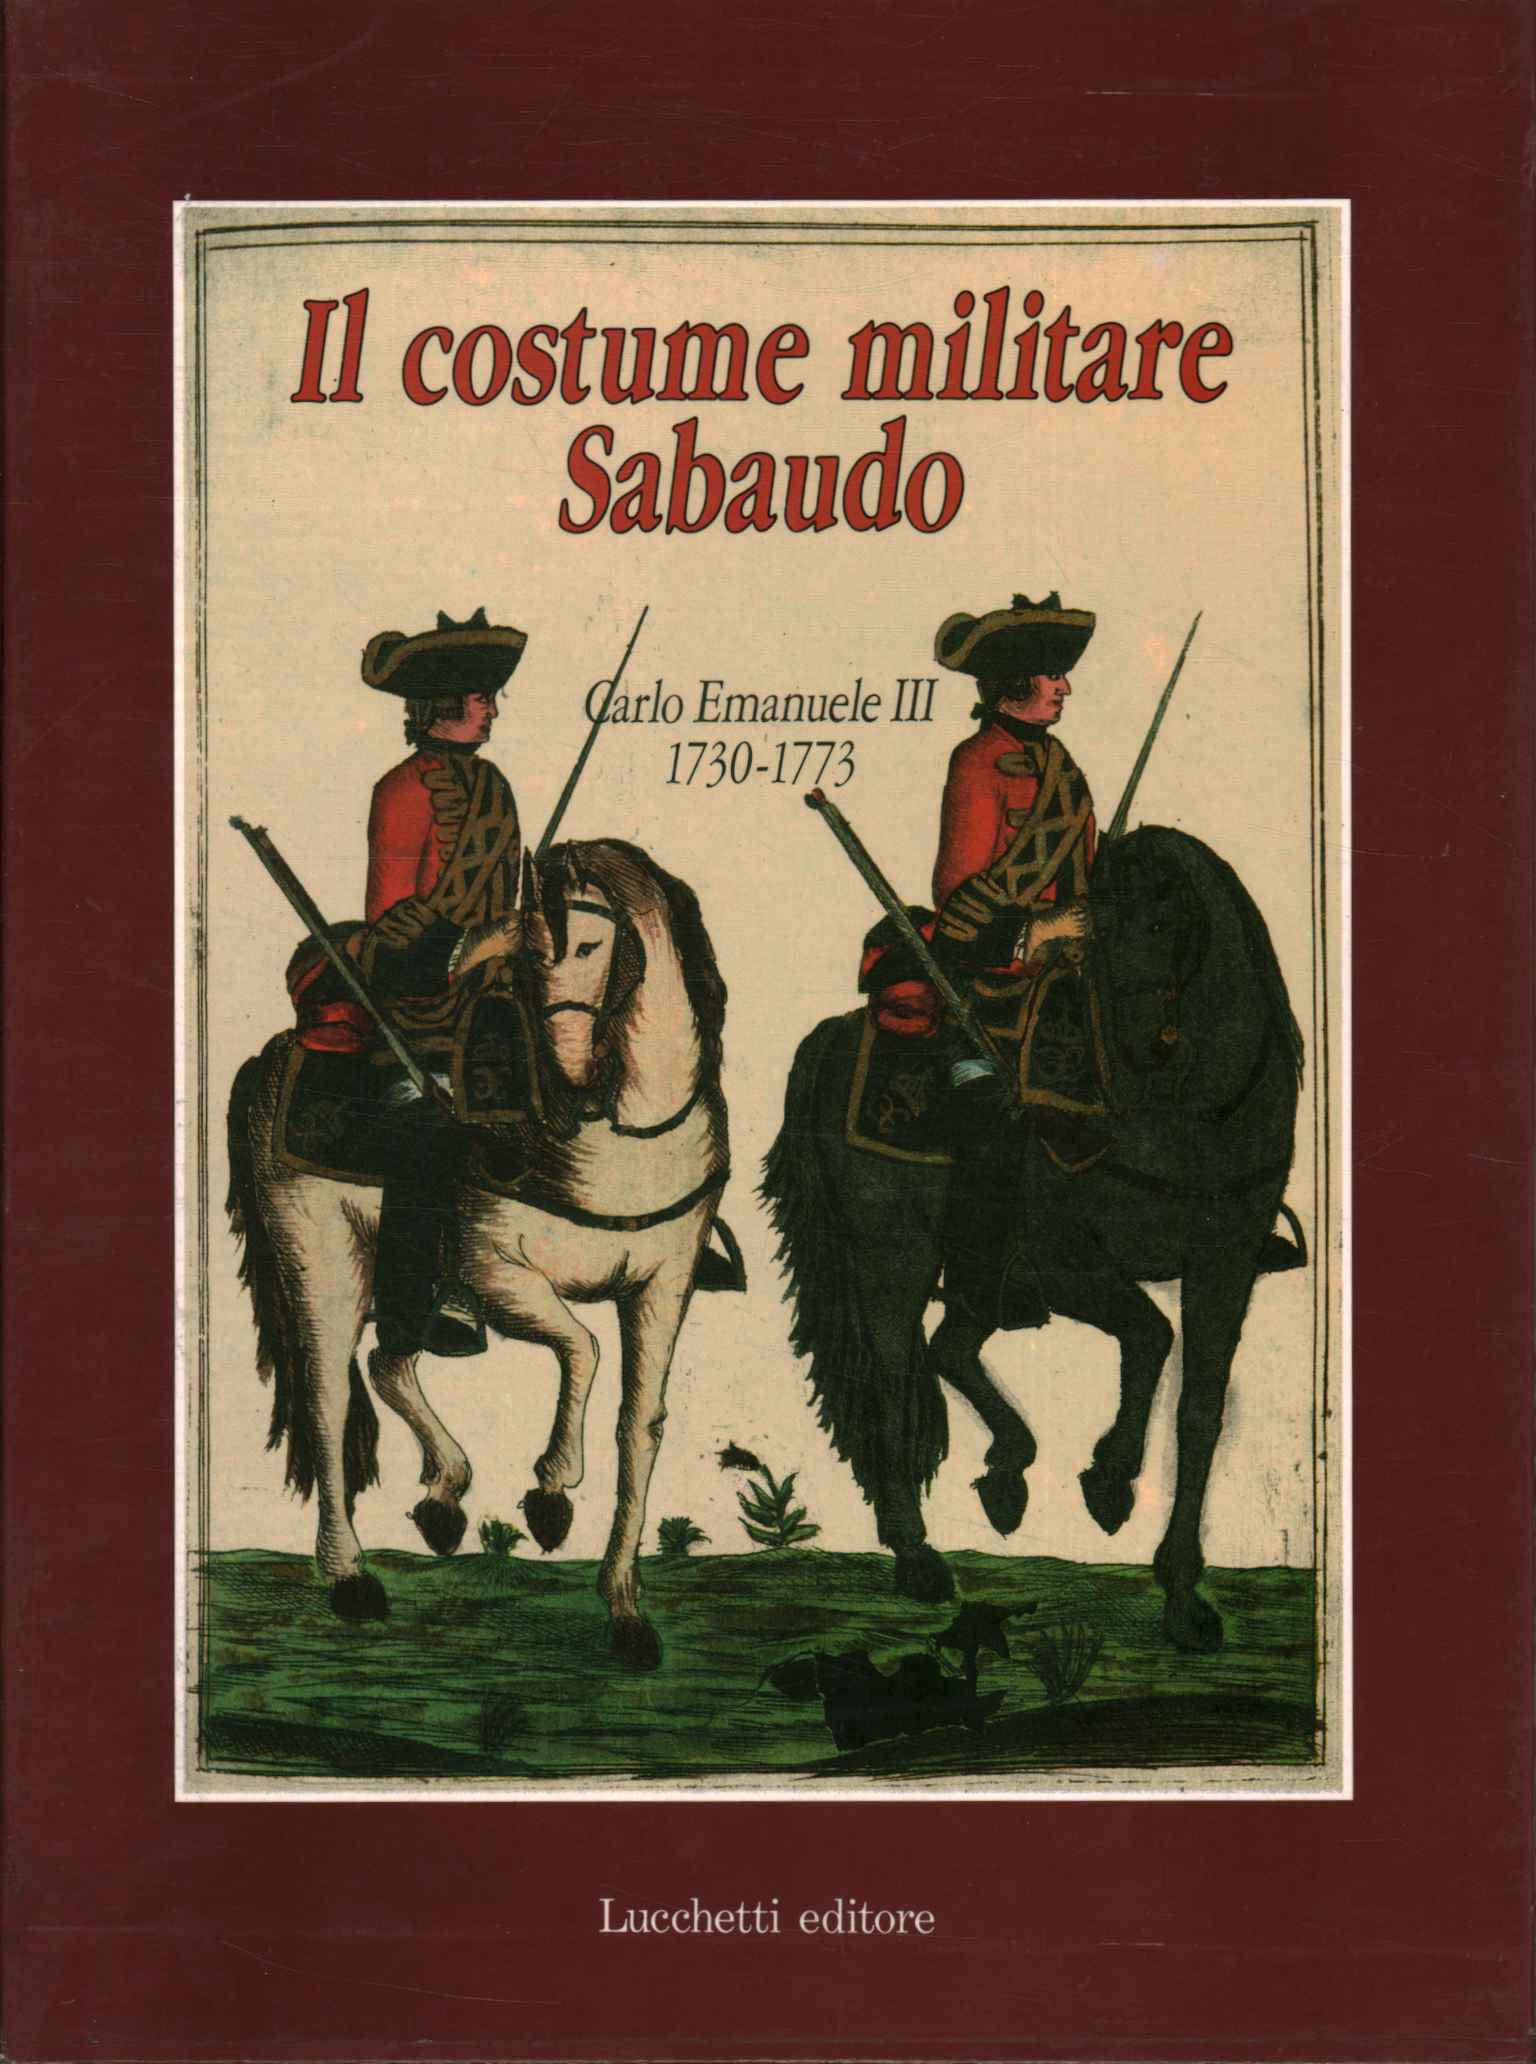 Livre de l'Uniforme des REGimen, The Savoy military costume (Volume 1)